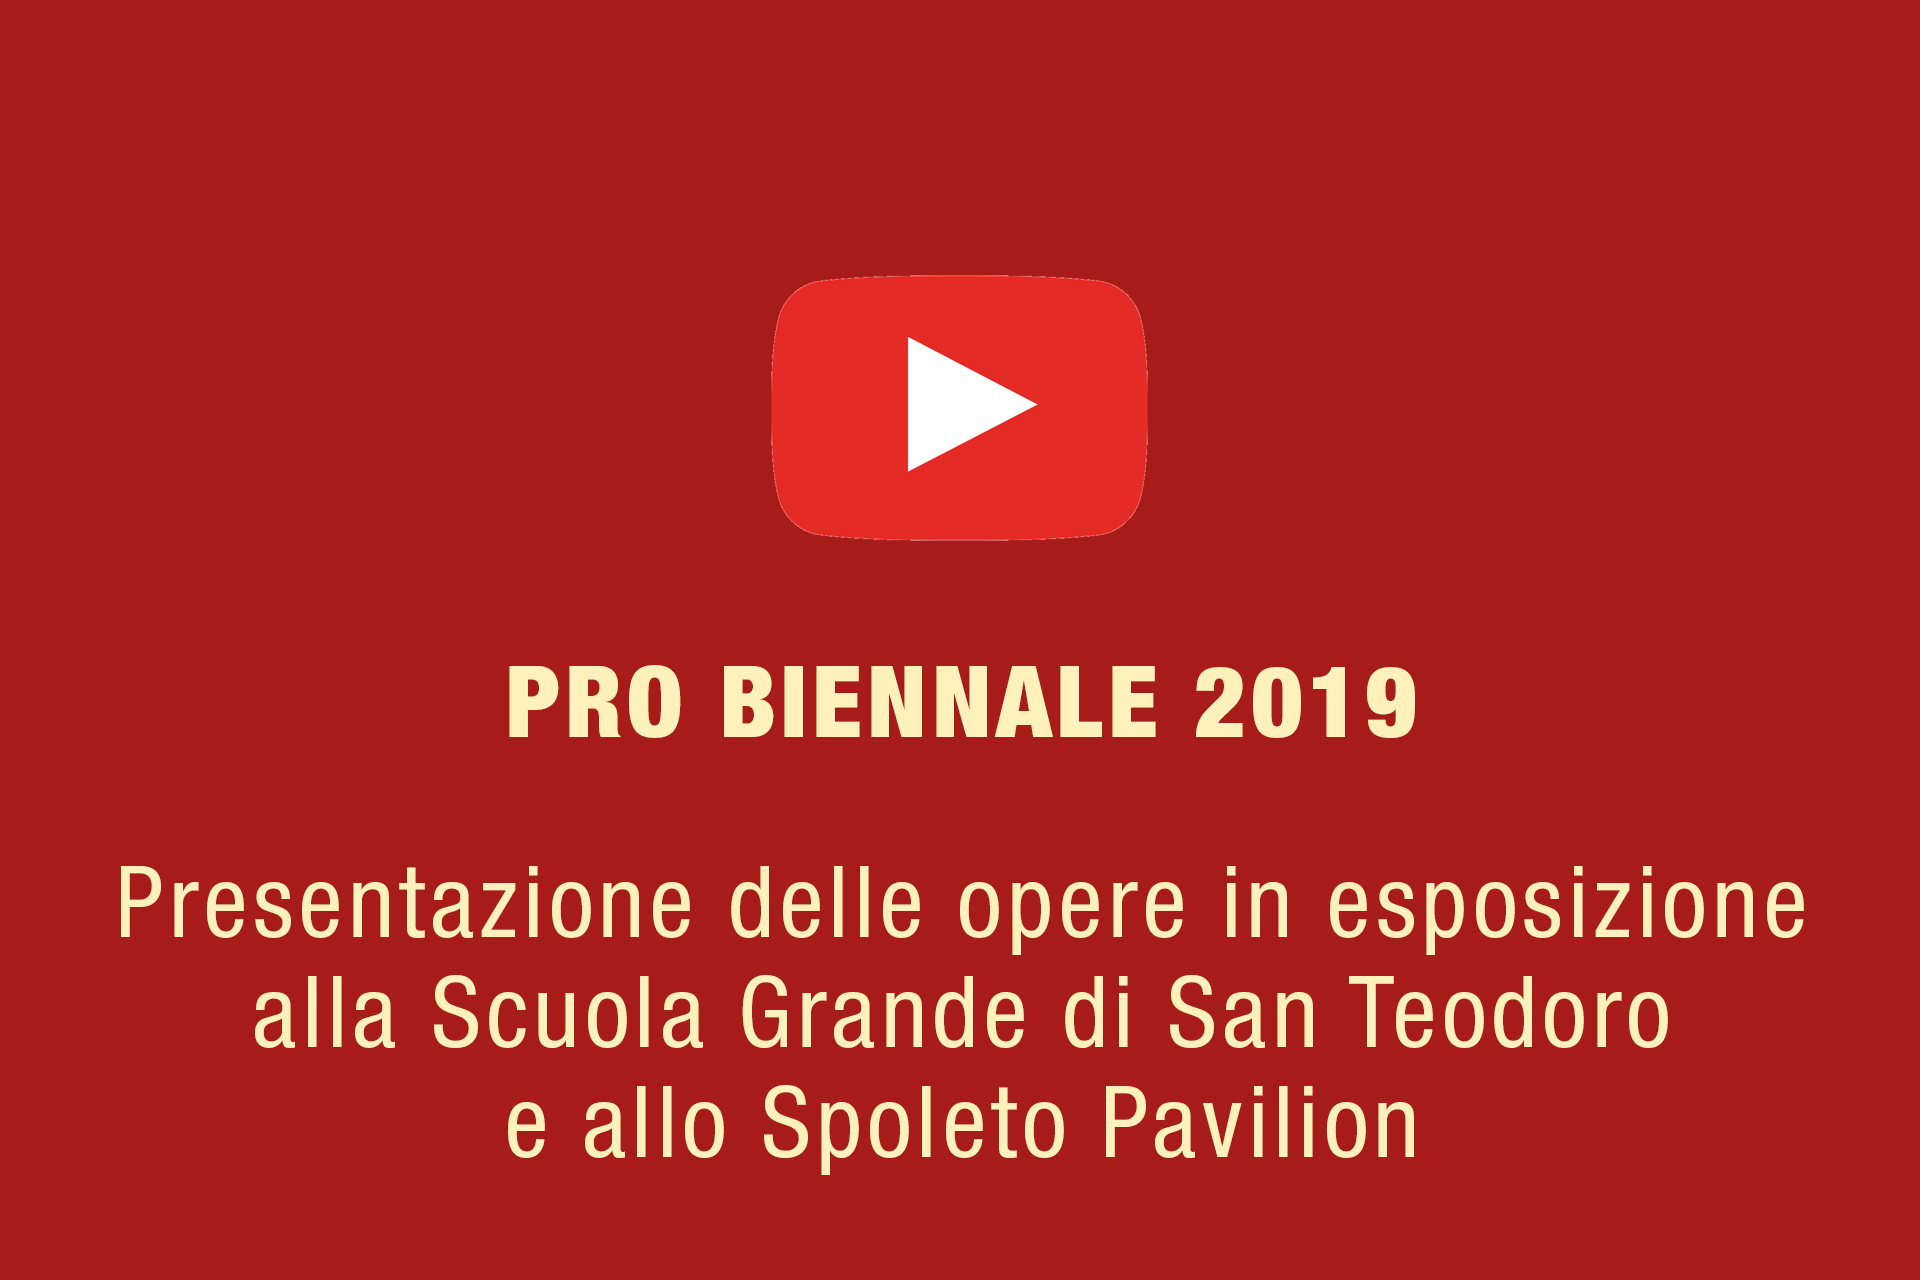 Pro Biennale 2019